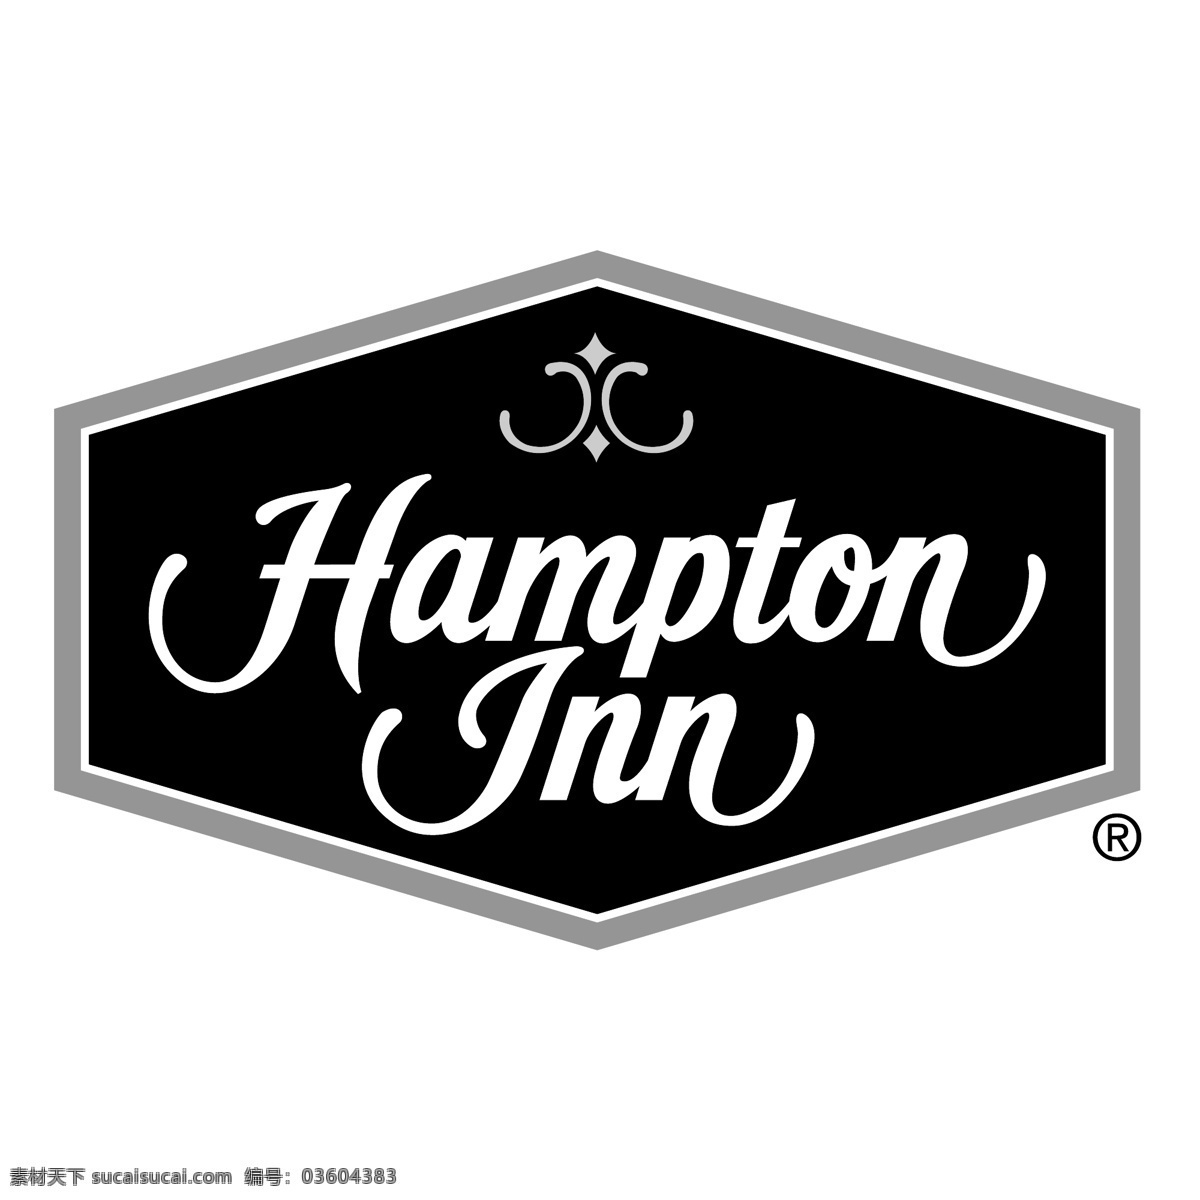 汉普顿酒店0 酒店 客栈 汉普顿 汉普顿客栈 标志 矢量 套房 向量 旅馆 矢量图 建筑家居